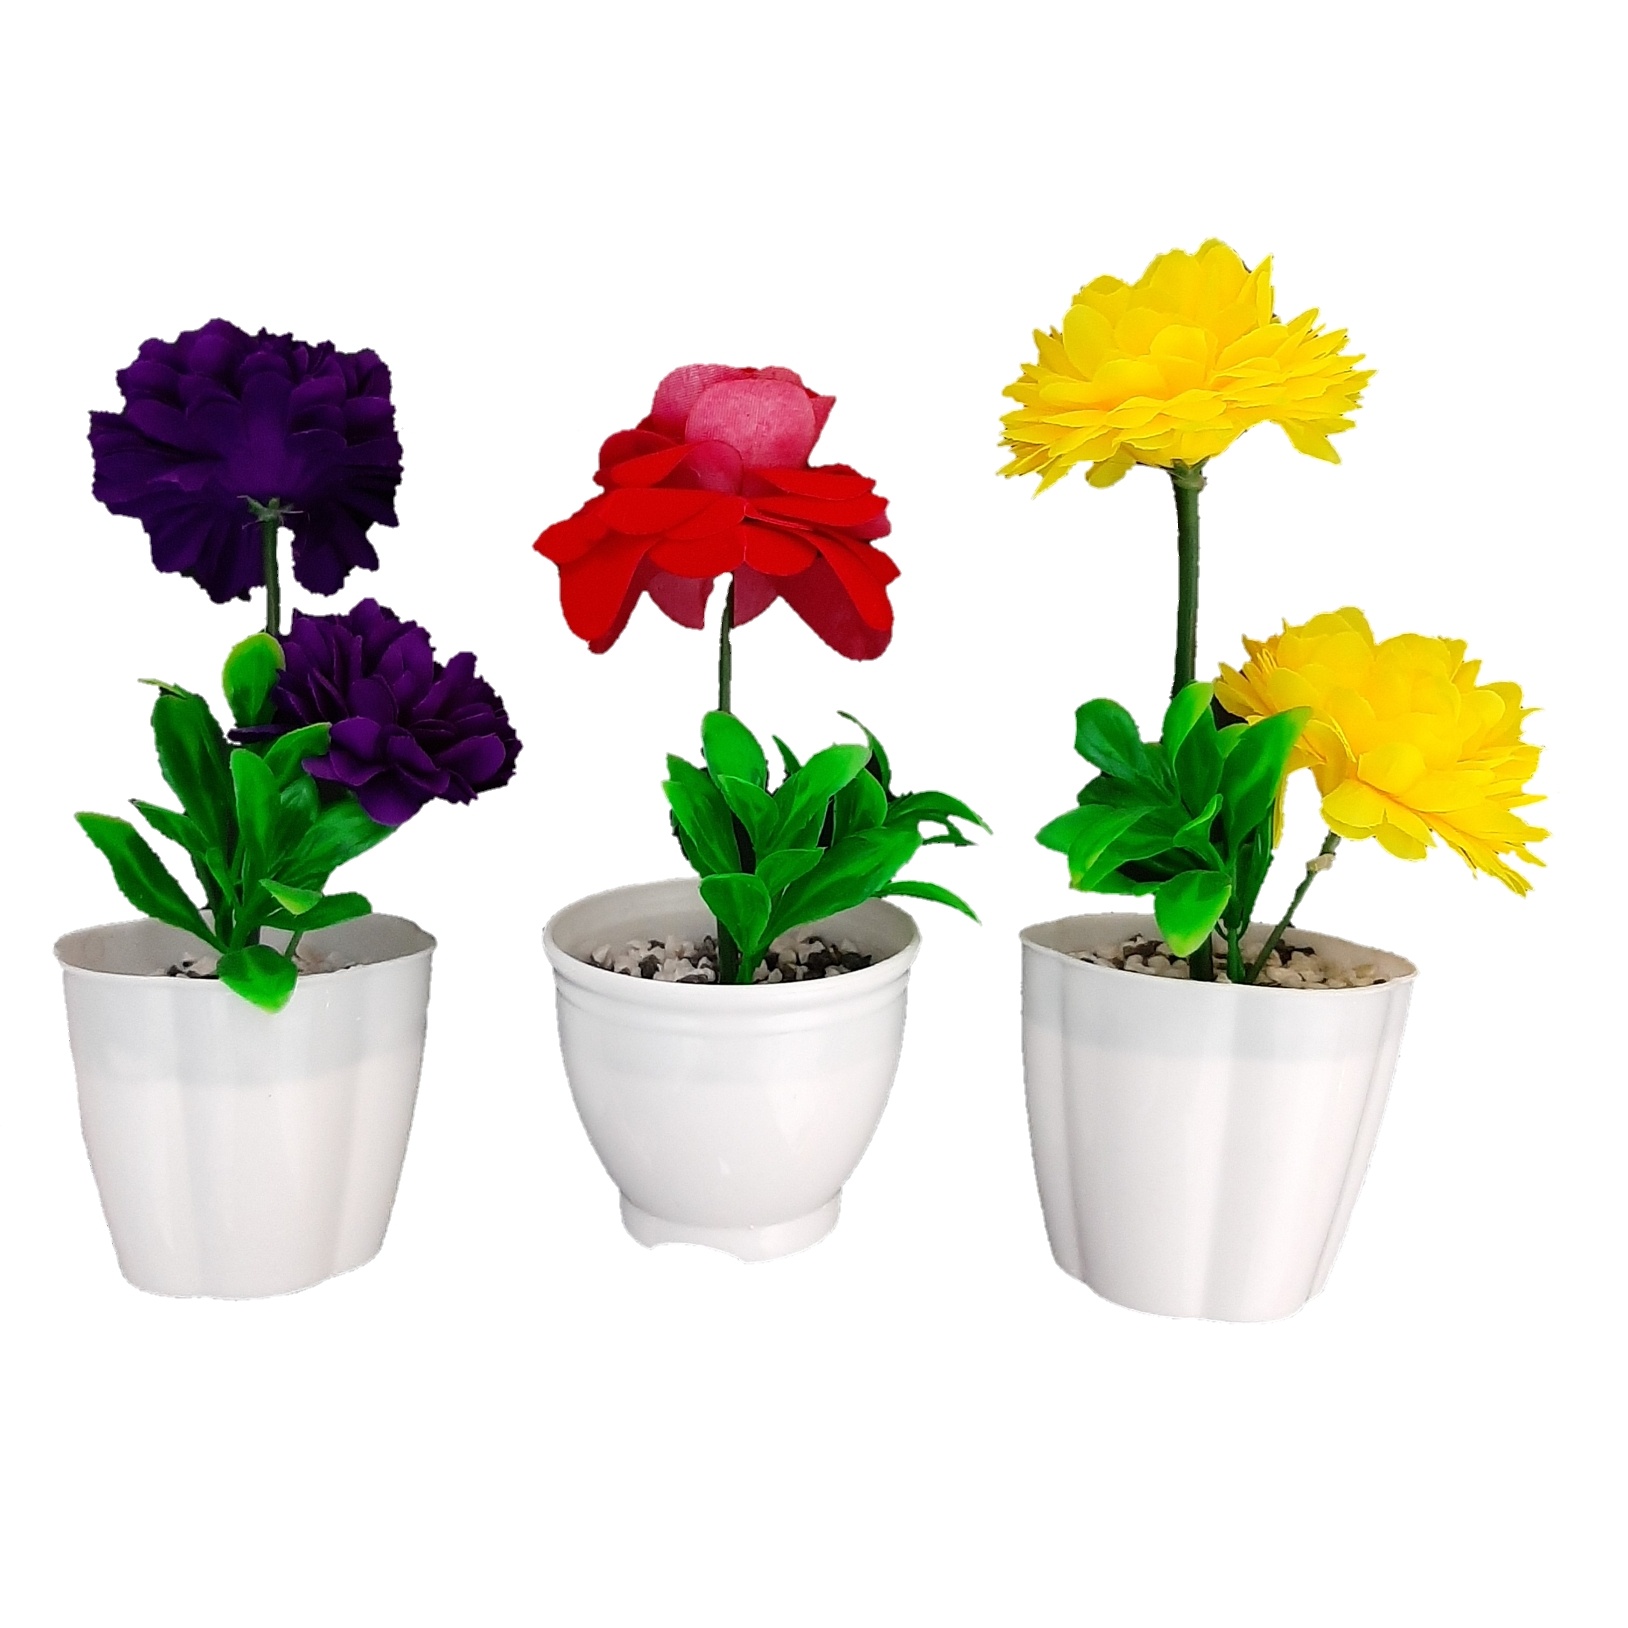 گلدان به همراه گل مصنوعی مدل گلخانه مجموعه 3 عددی